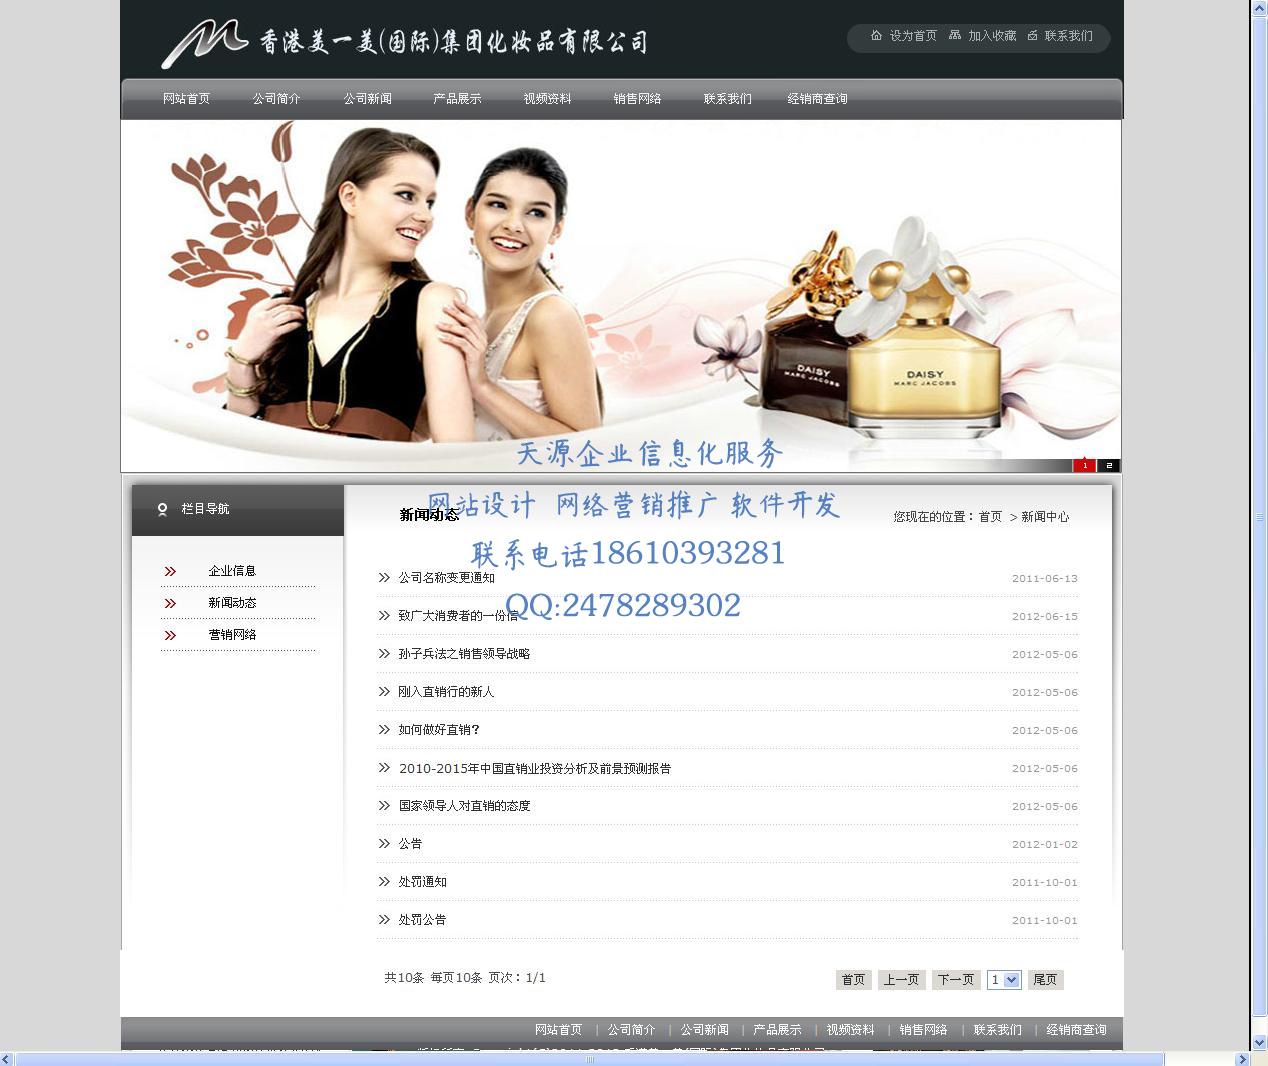 2047香港美一美(国际)集团化妆品有限公司3